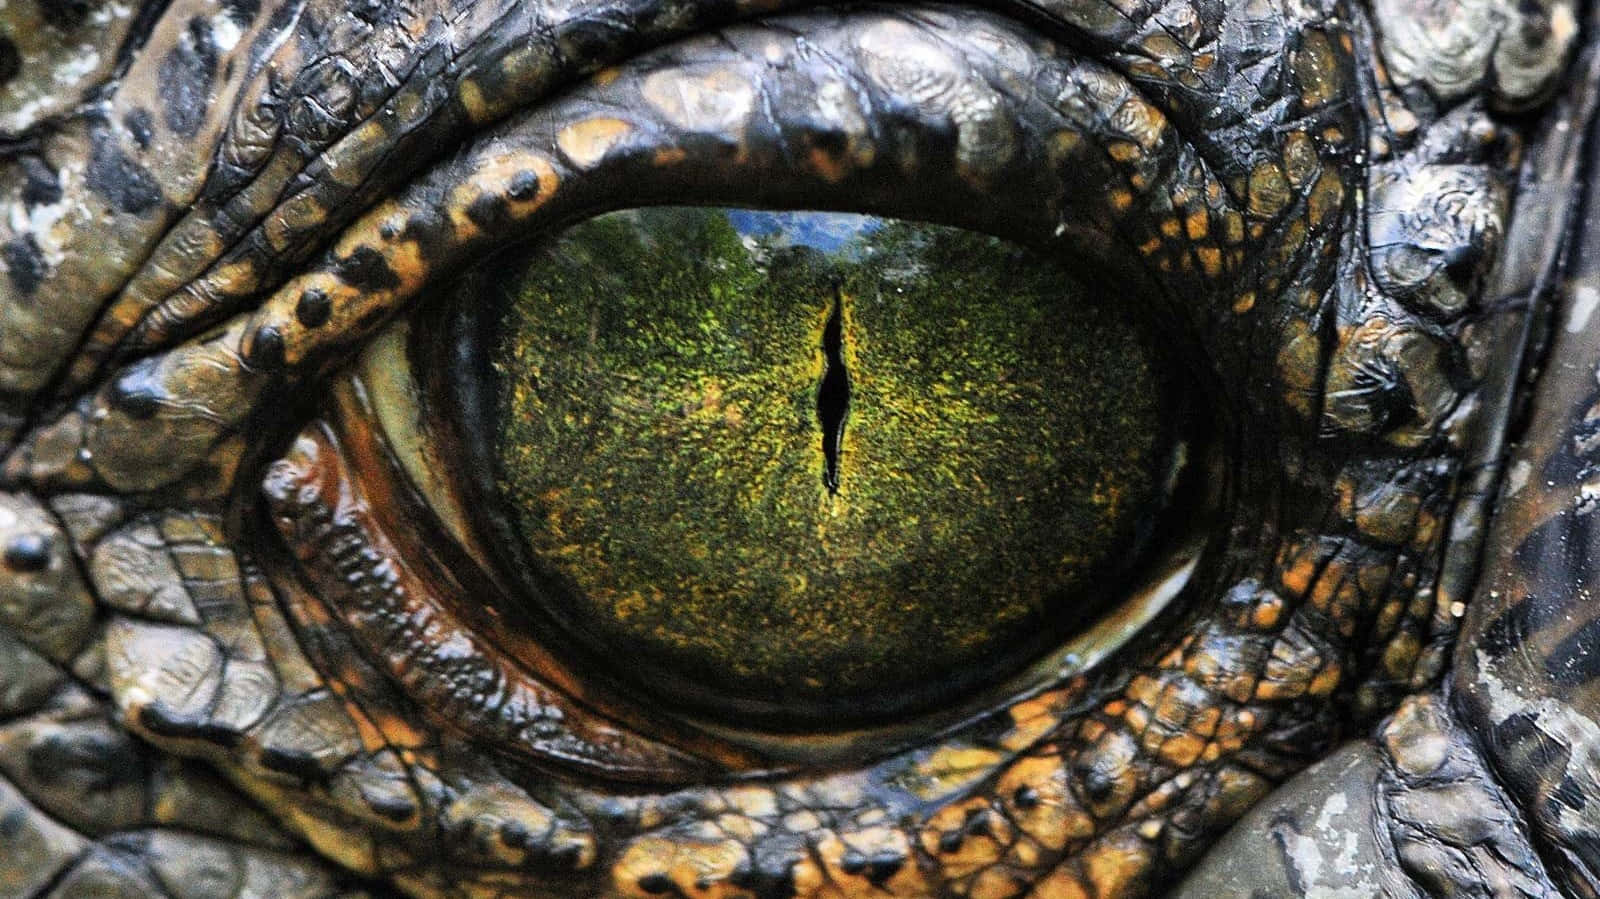 Etnærbillede Af En Alligator's Øje.